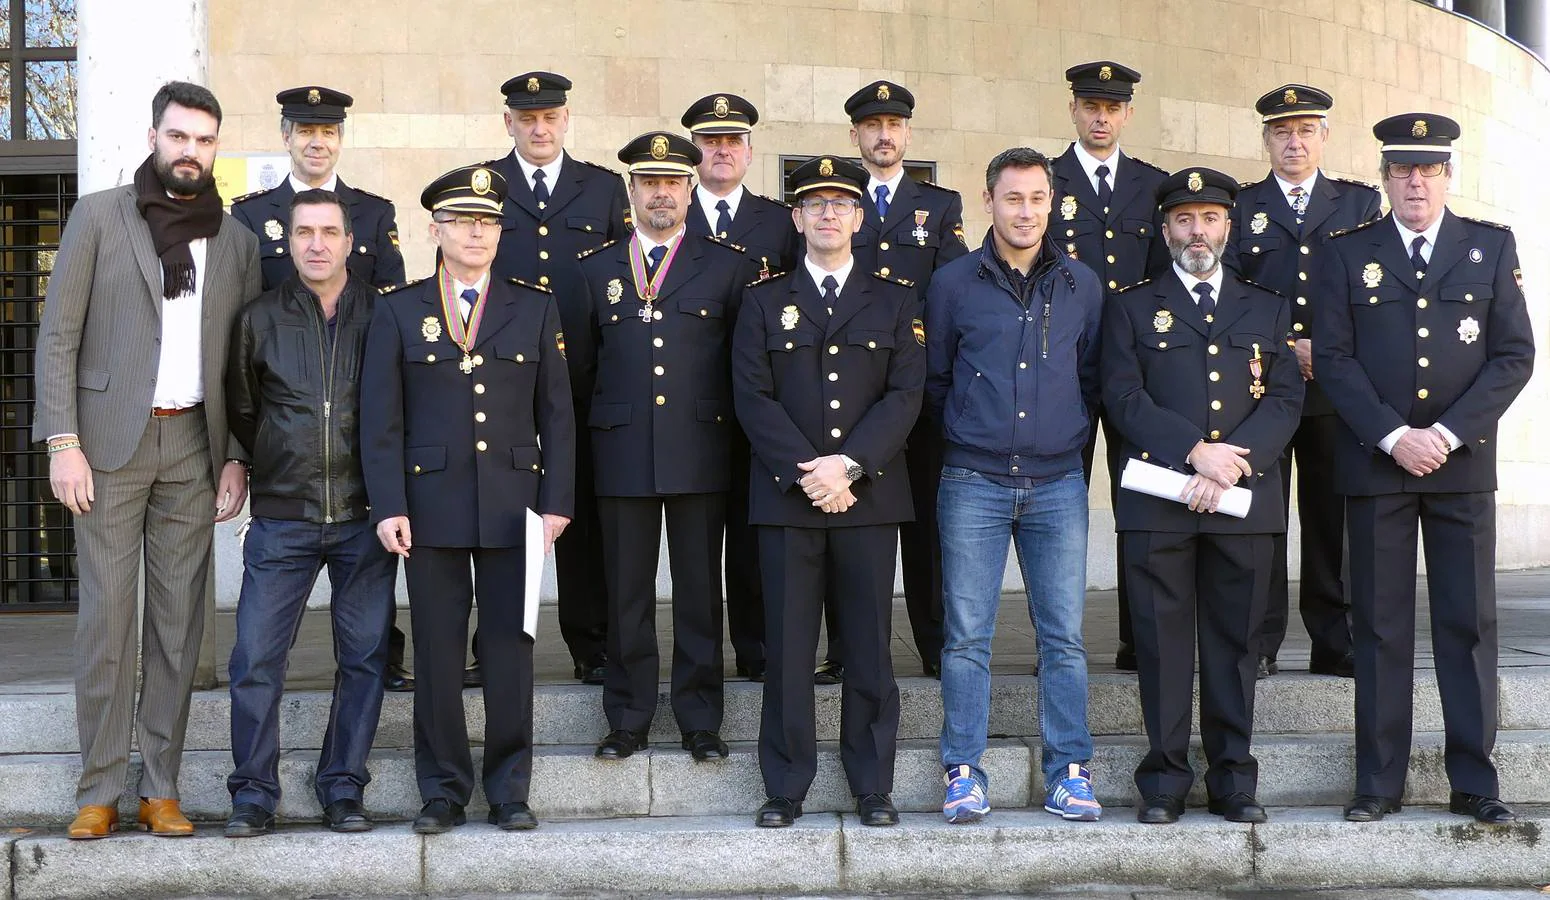 La Policía Nacional de Segovia celebra su 194 aniversario